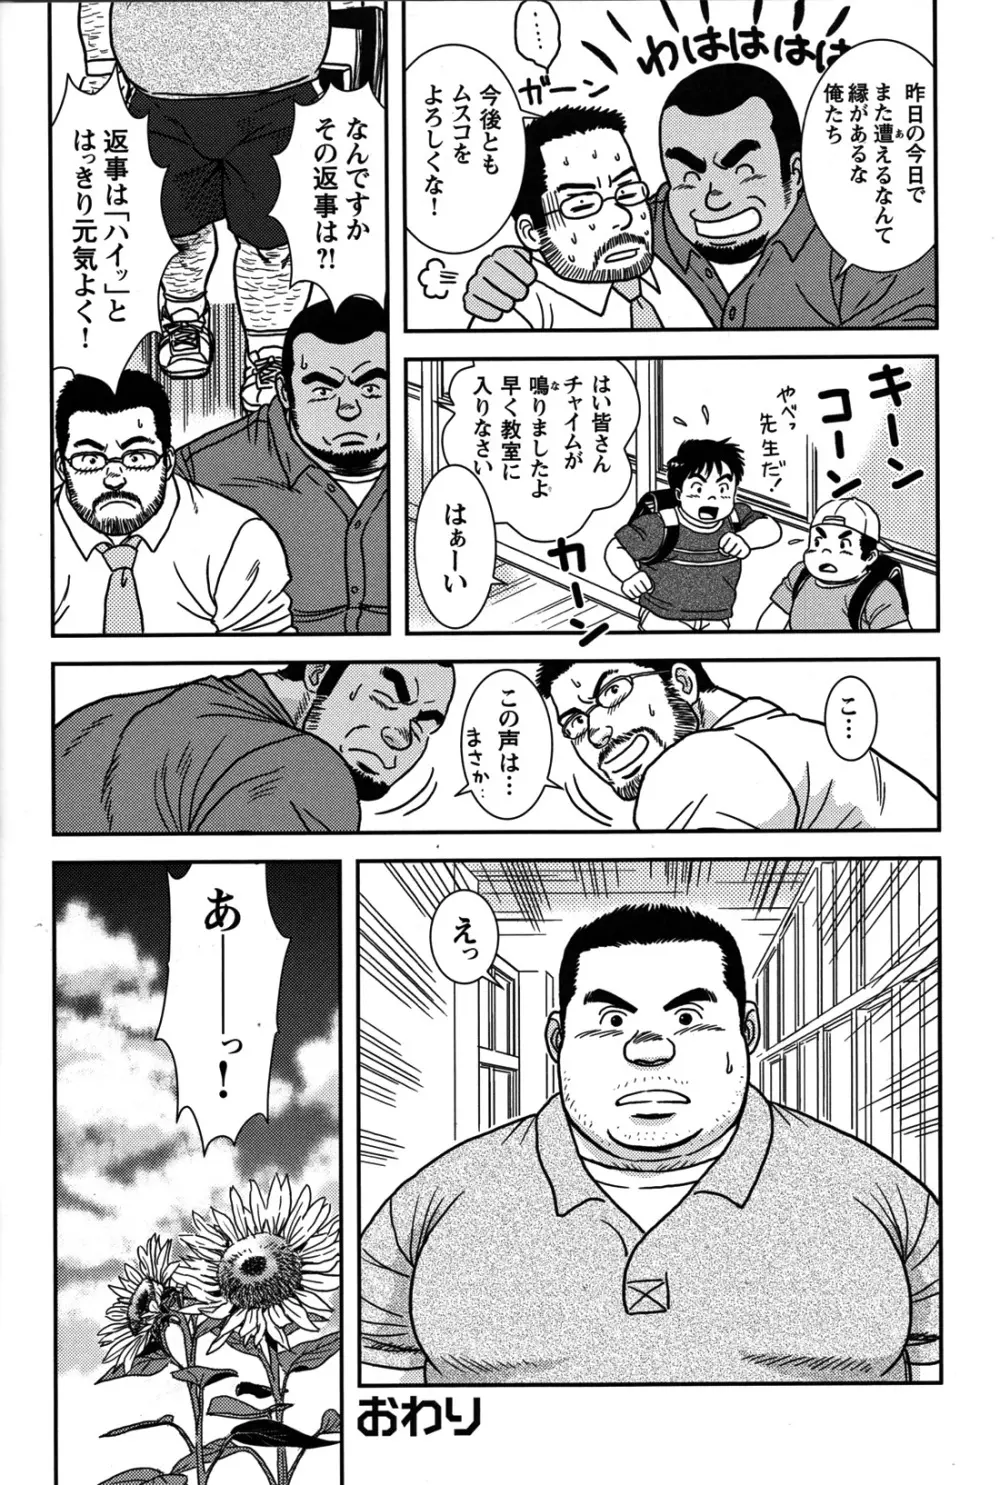 Comic G-men Gaho No.07 22ページ